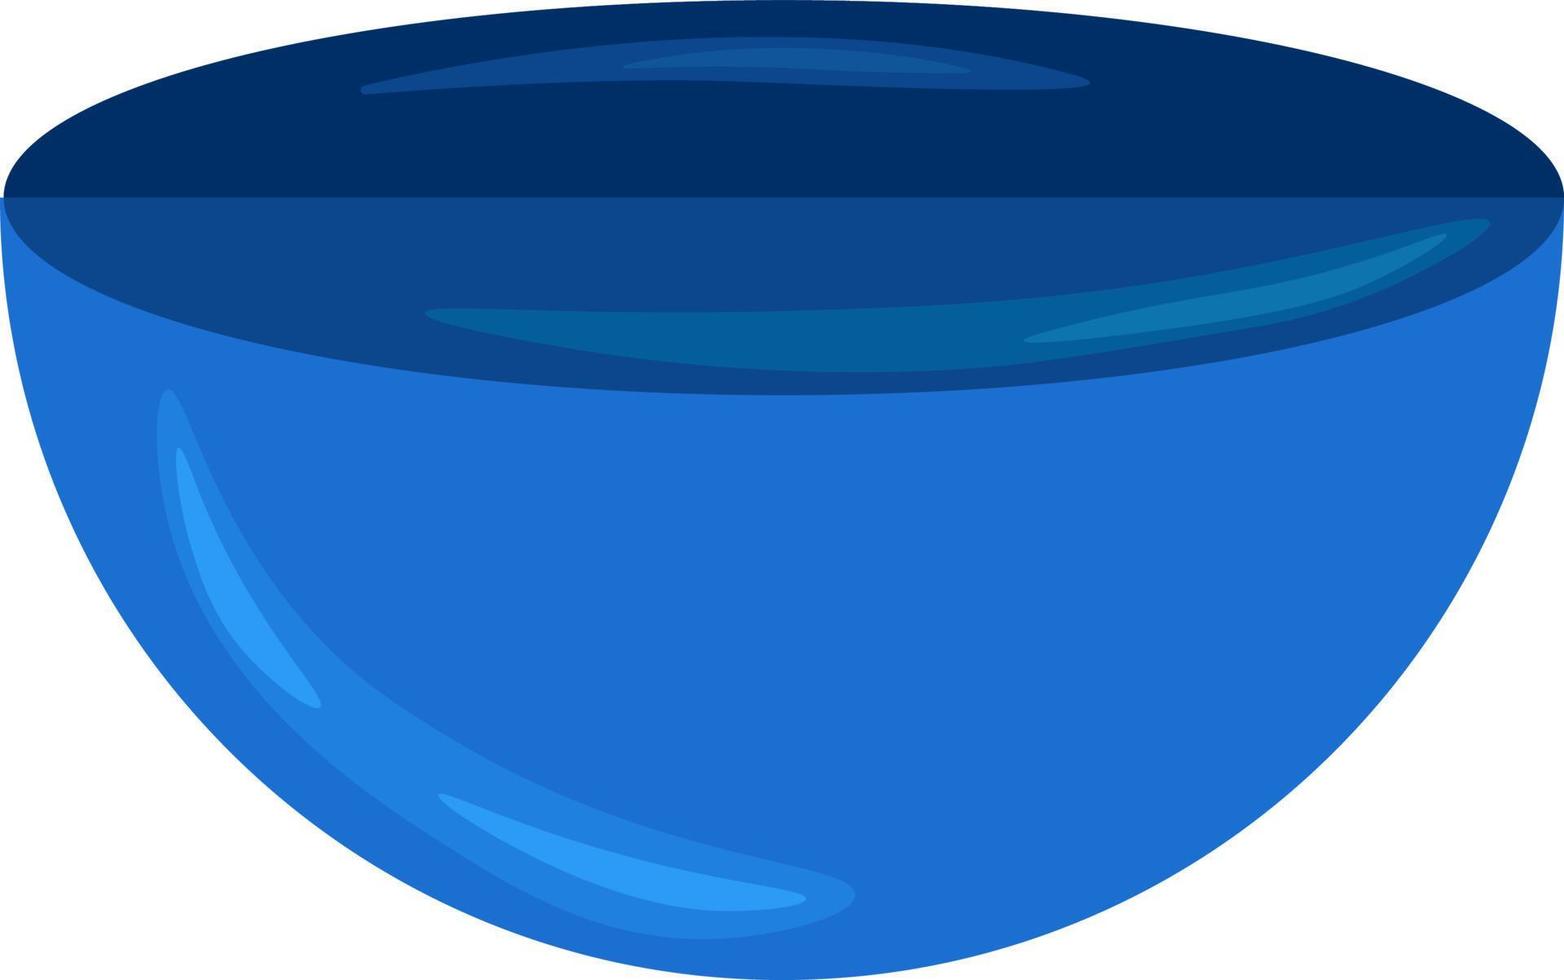 Blue bowl, illustration, vector on white background.